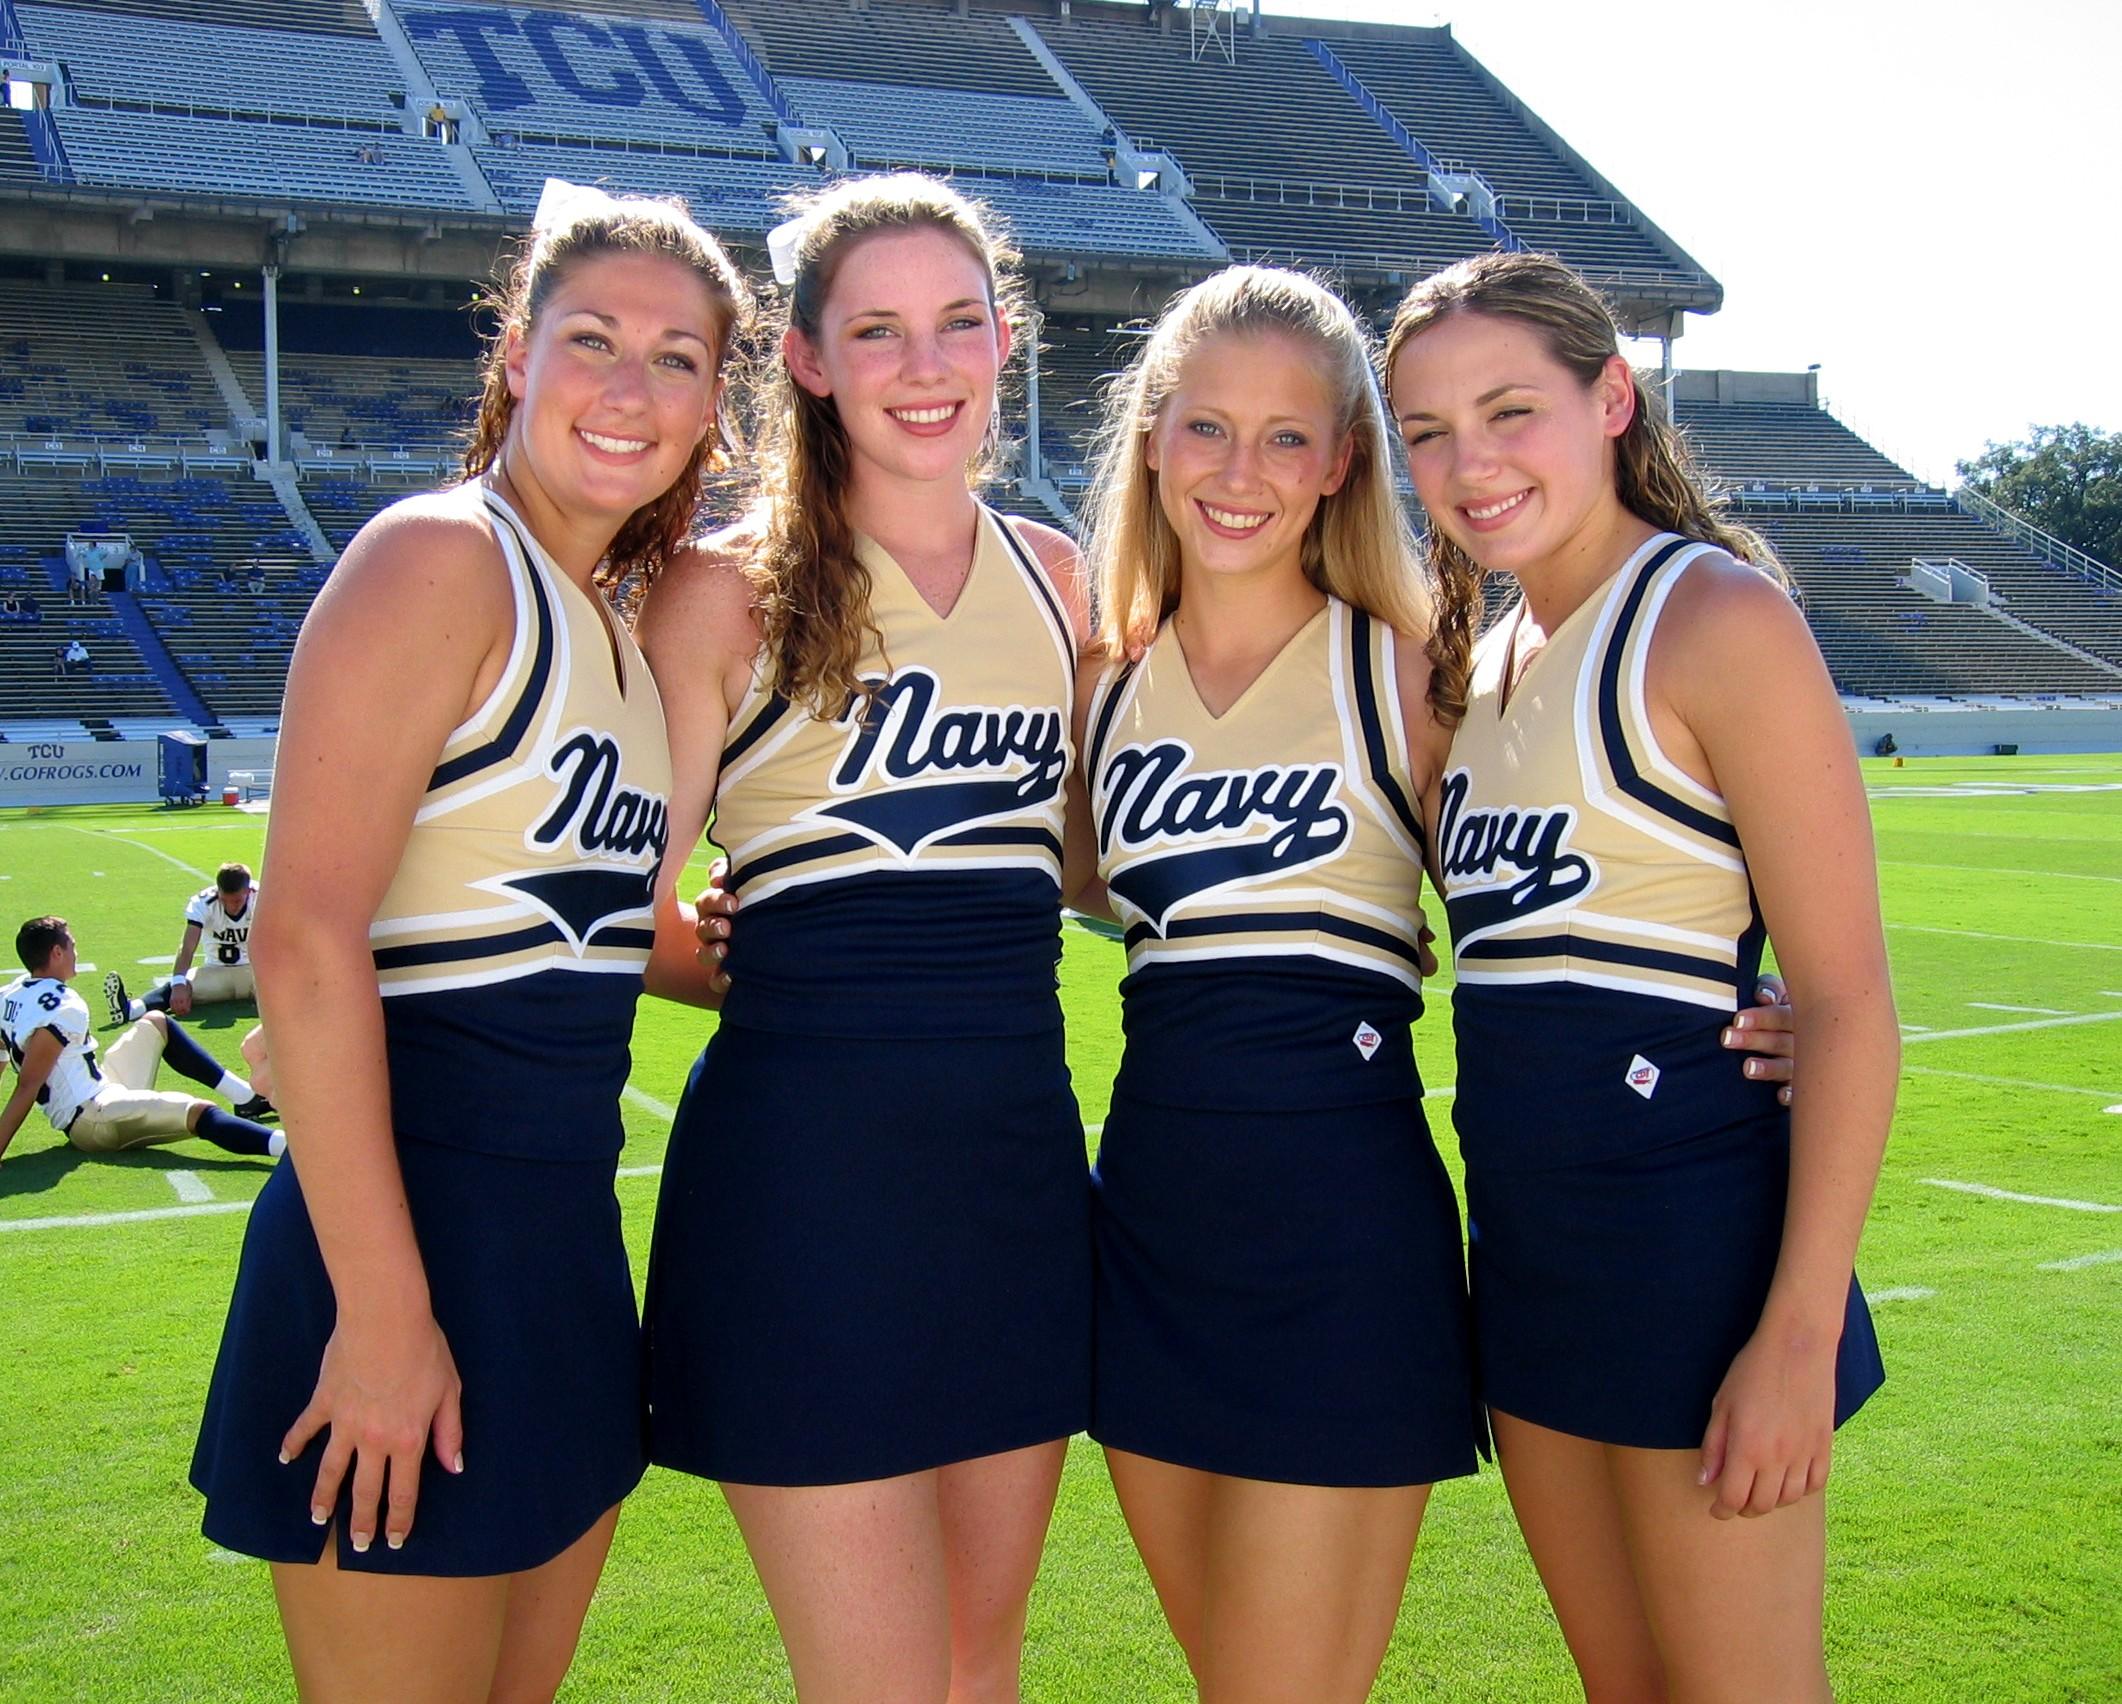 Hot high school cheerleader pics - 🧡 Friends, fellow cheerleaders discuss....